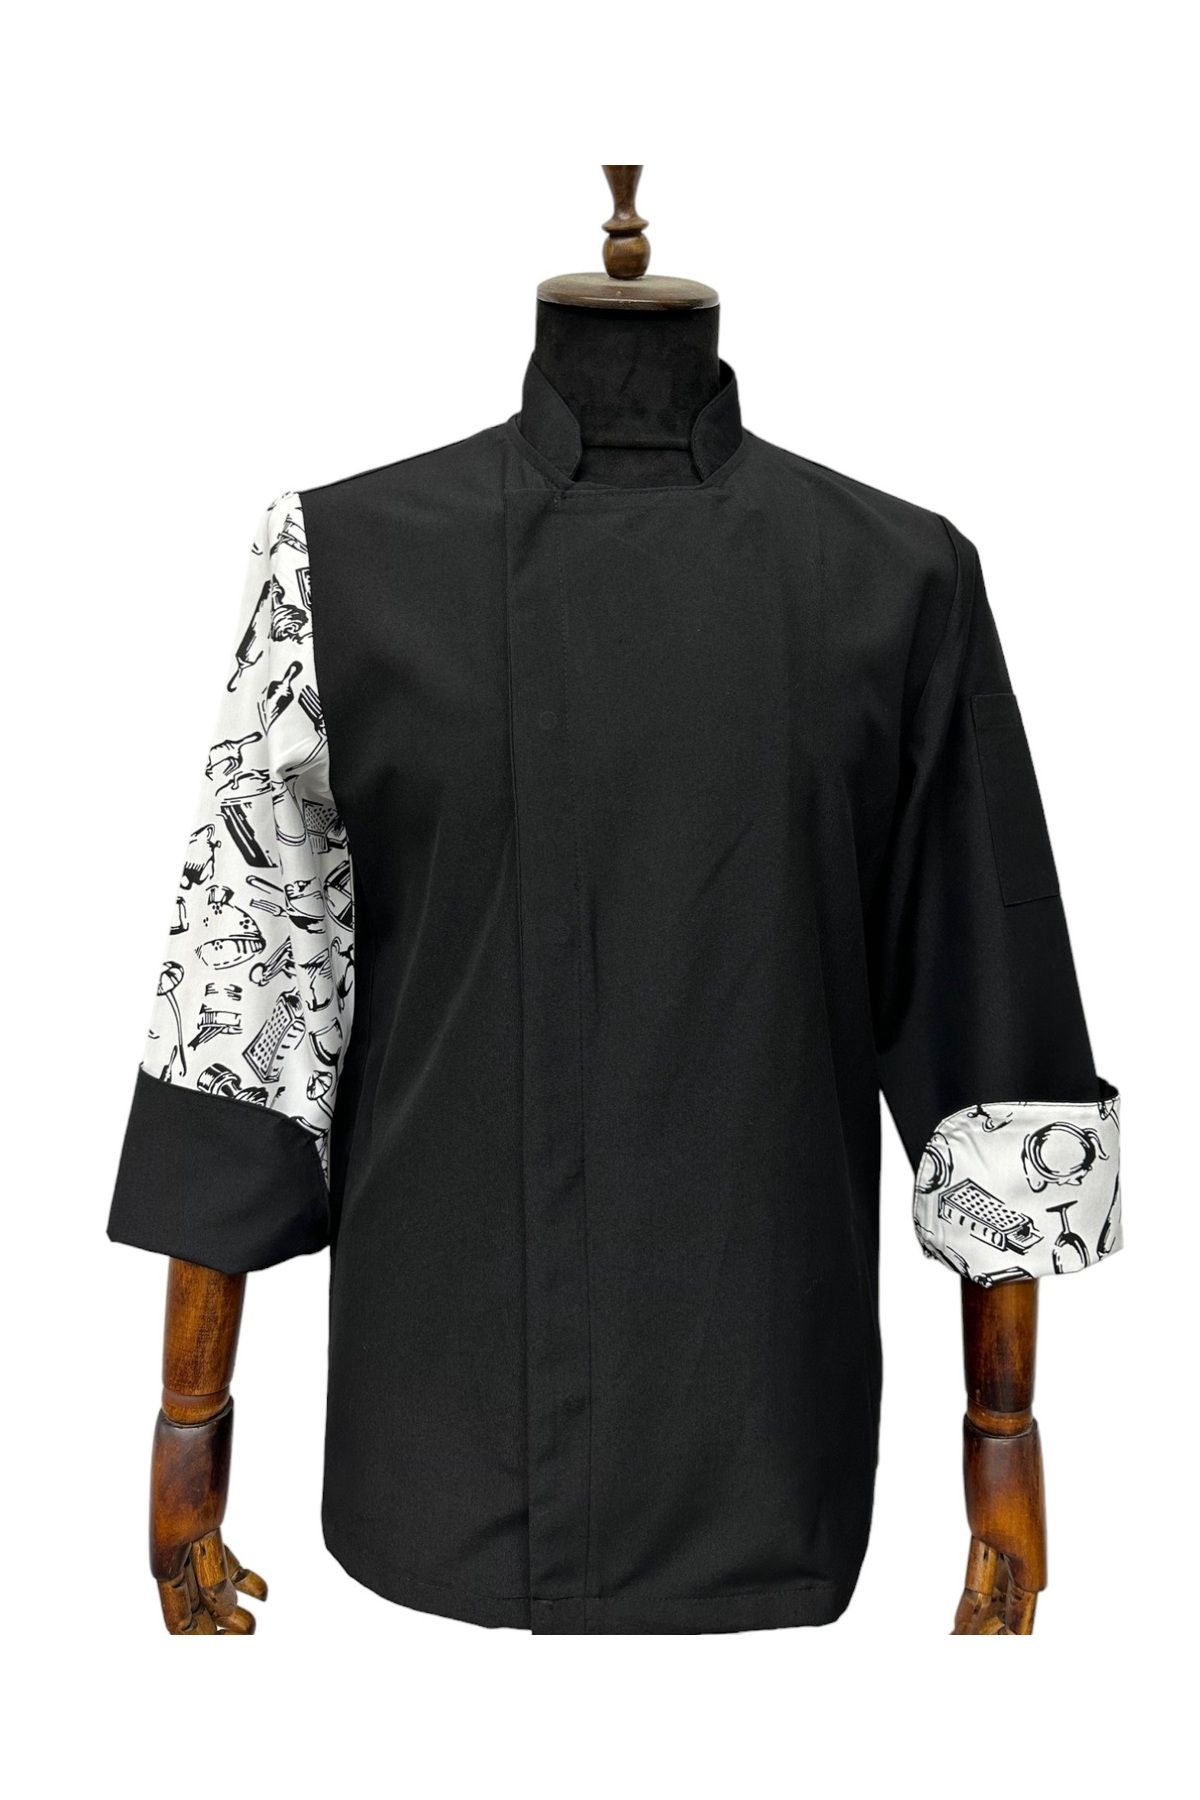 TePe Üniforma Aşcı Ceket Kol Aşcı Desenli Tasarım Mutfak Ceket tasarım ceket